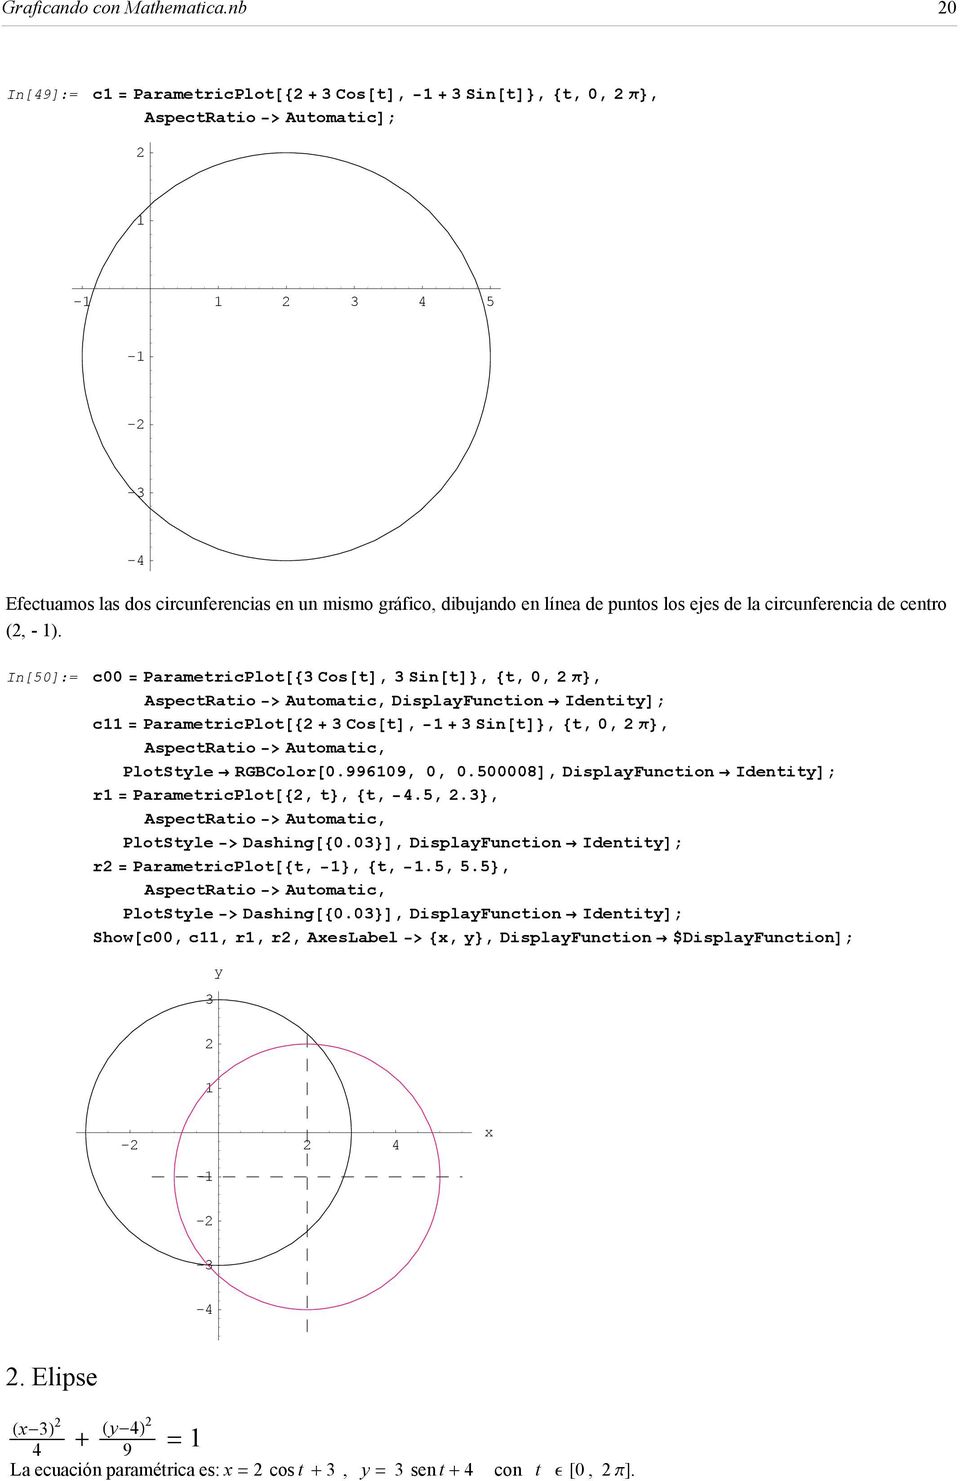 de la circunferencia de centro (, - ).